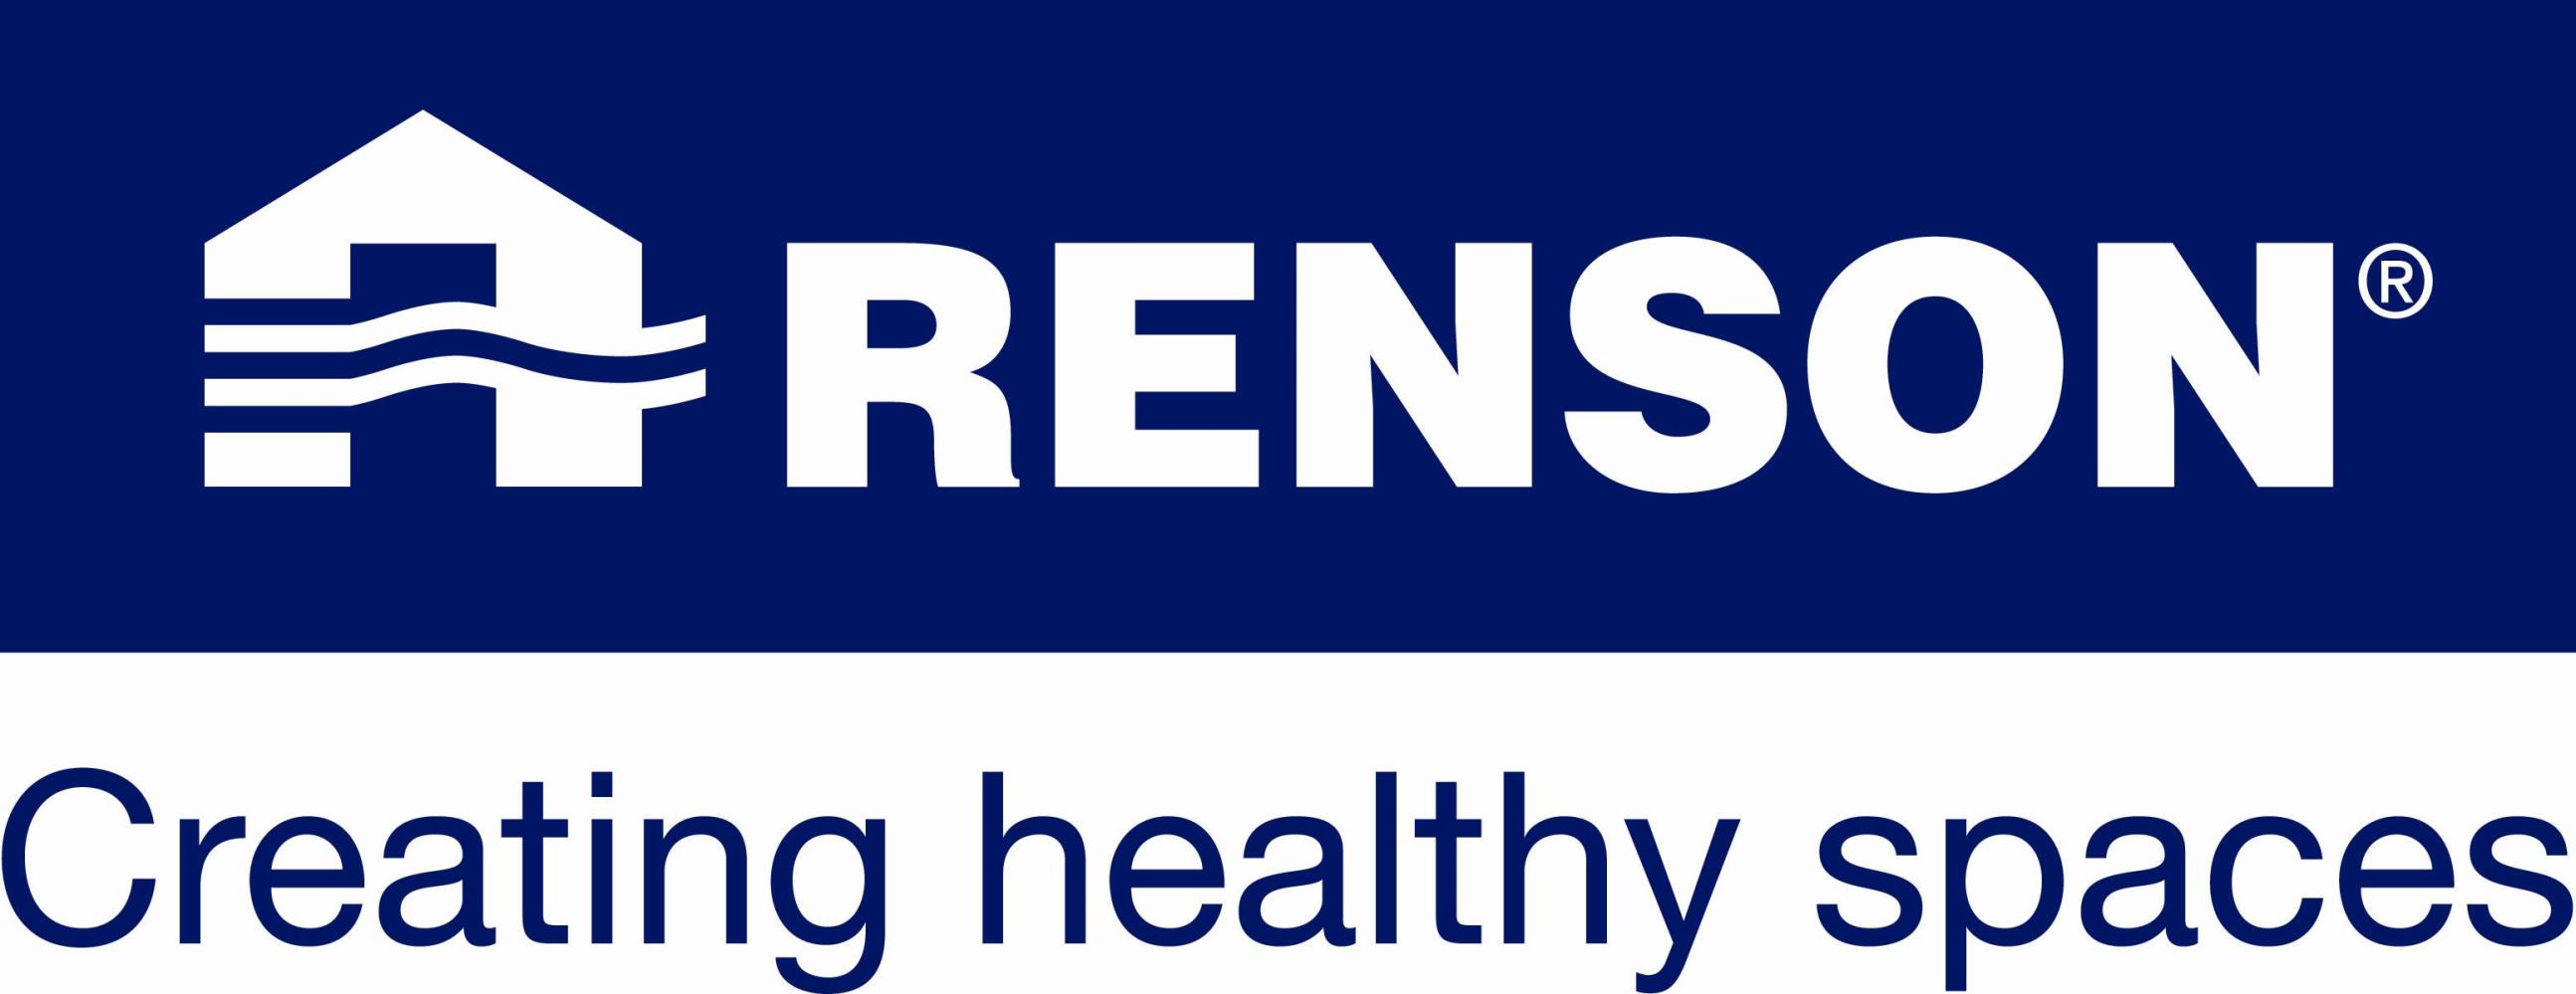 Renson logo 2.jpg